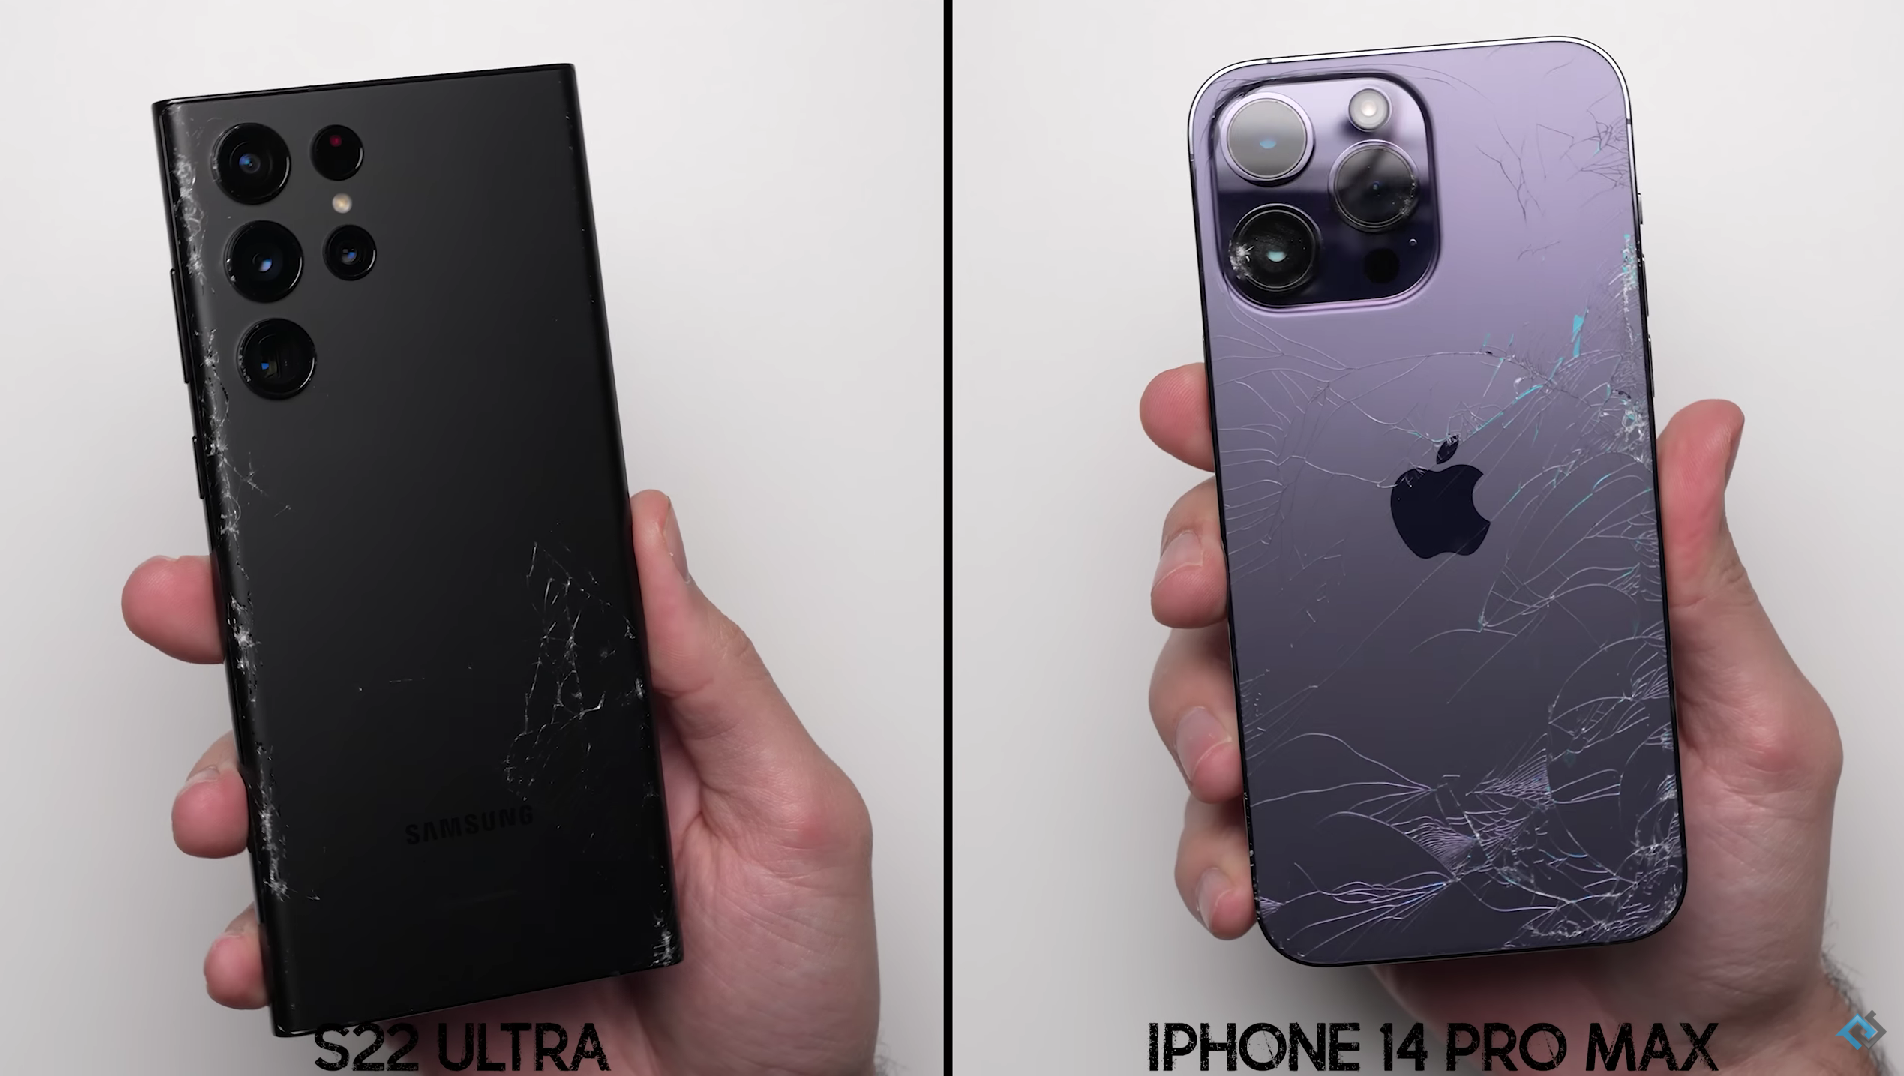 L'iPhone 14 Pro Max si è scontrato con il Samsung Galaxy S22 Ultra in un test di caduta